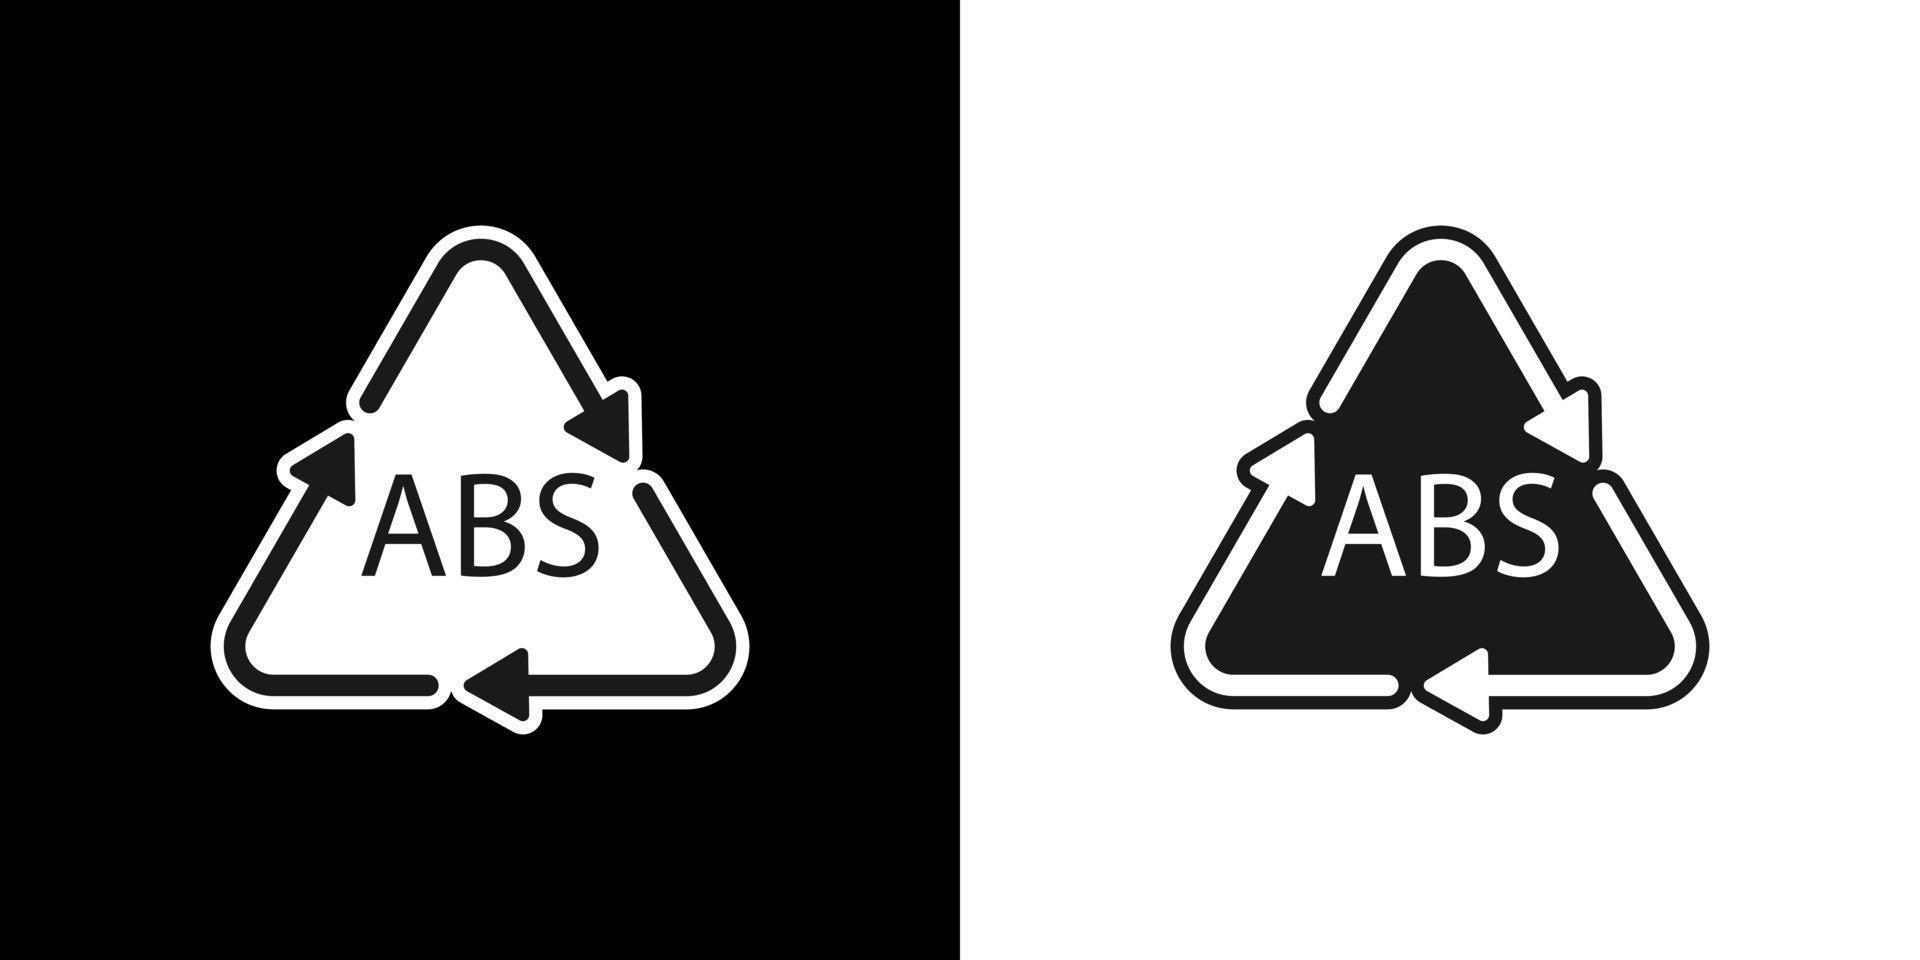 symbole de recyclage en plastique abs 9 icône vectorielle. code de recyclage du plastique abs. vecteur